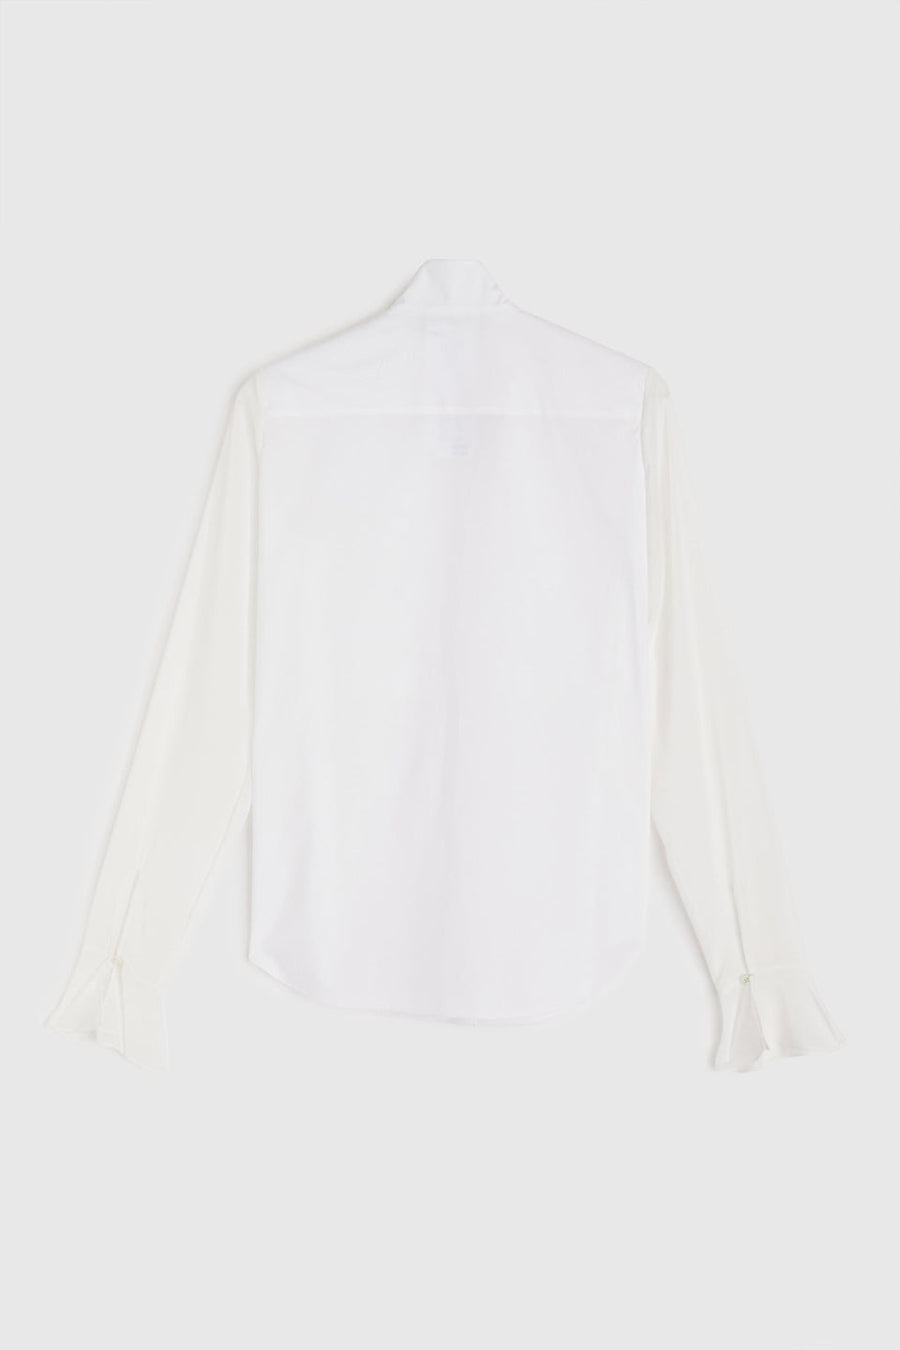 rochas shirt in chiffon cotton poplin white